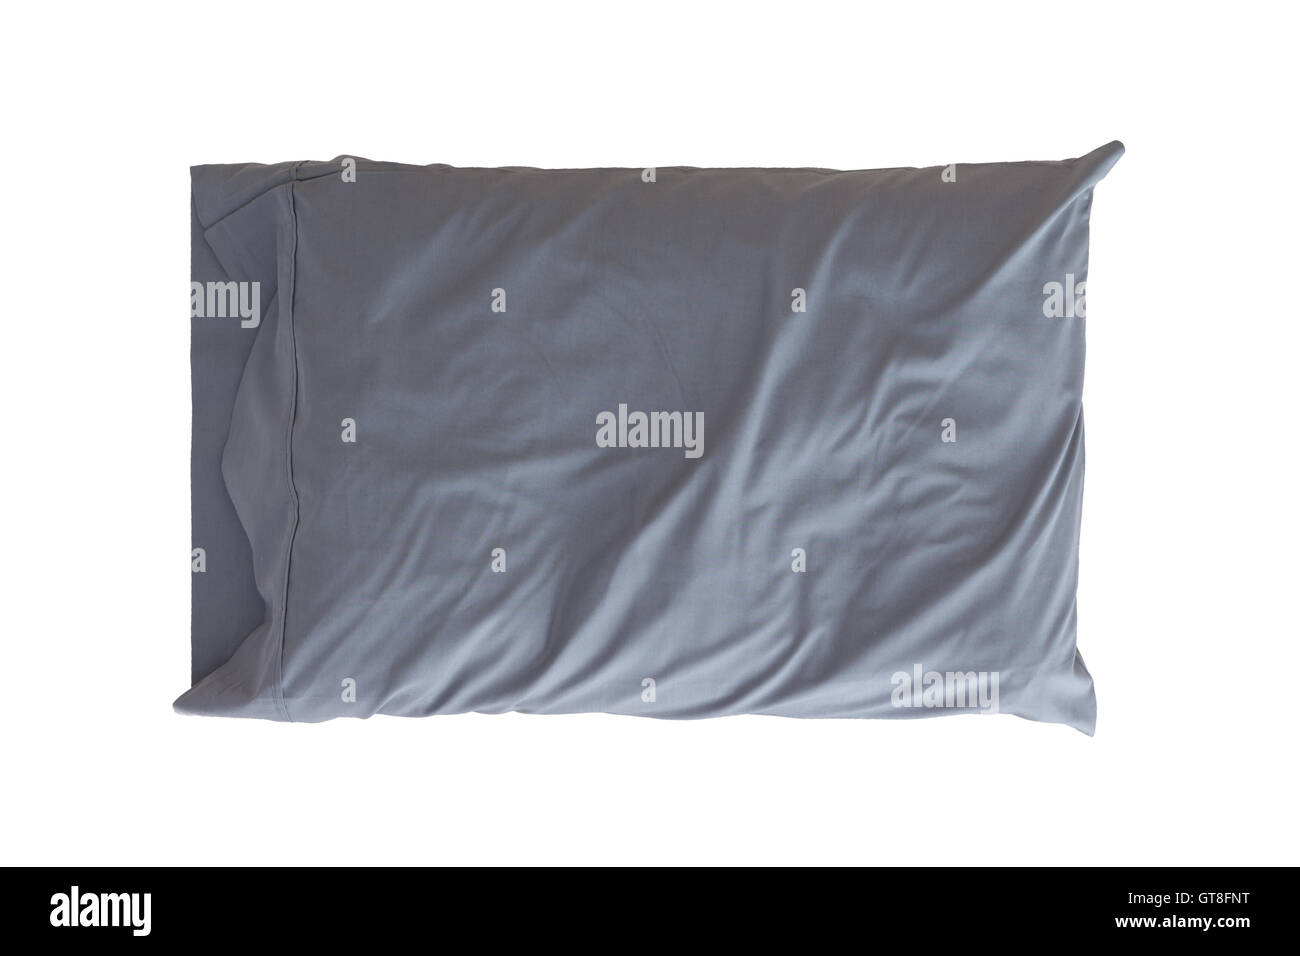 Angenehm weiches Kissen in einem faltigen grauen Kissenbezug für Schutz und Hygiene isoliert auf weiss Stockfoto